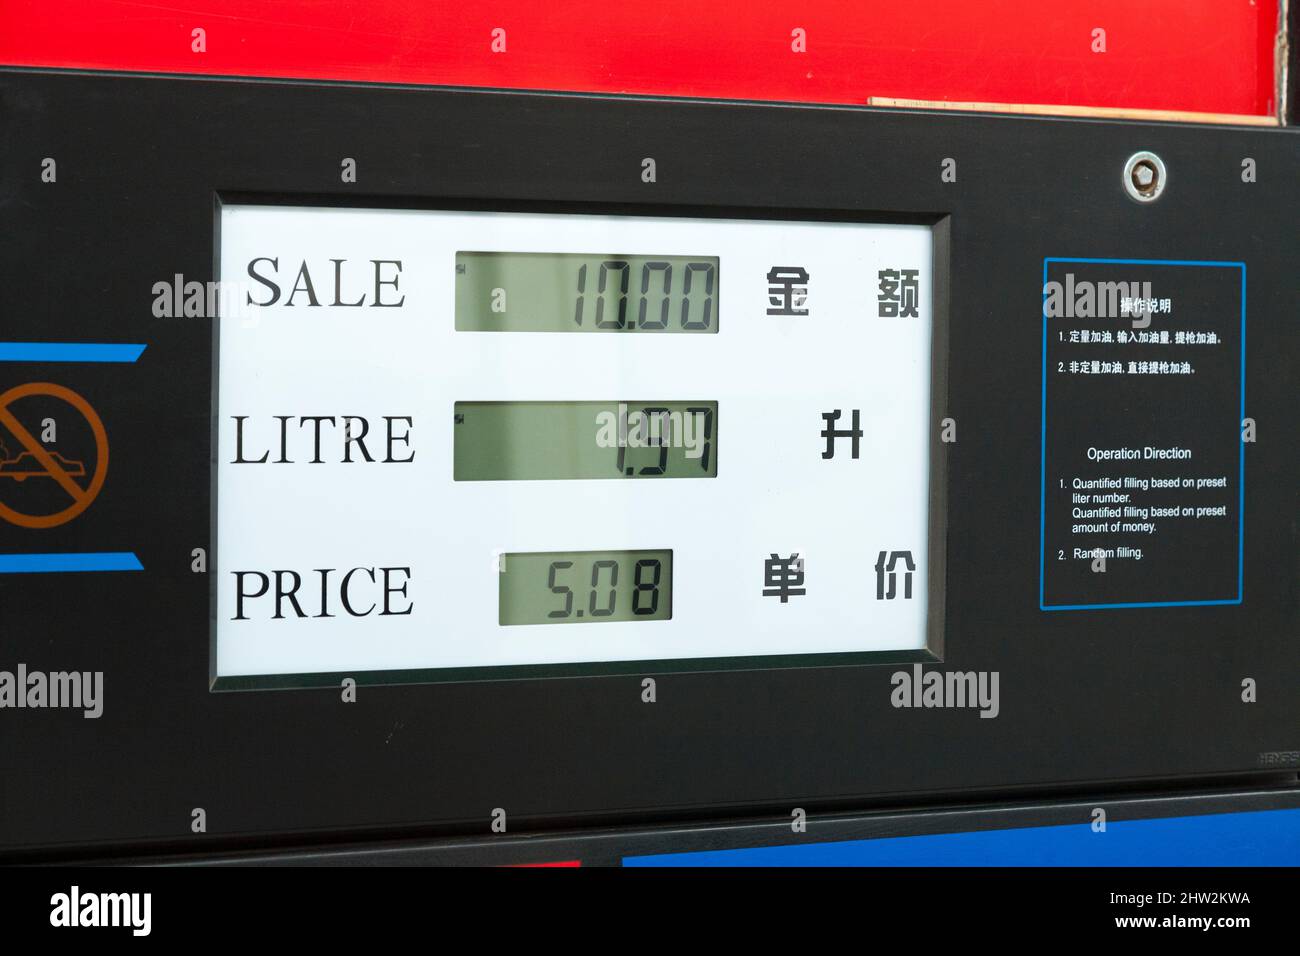 Pompe à essence chinoise vendant / distribuant de l'essence d'indice d'octane 93 à Tianshui, province de Gansu, nord-ouest de la Chine. PRC. La quantité vendue, le prix total et le prix par litre sont également affichés en anglais. (125) Banque D'Images